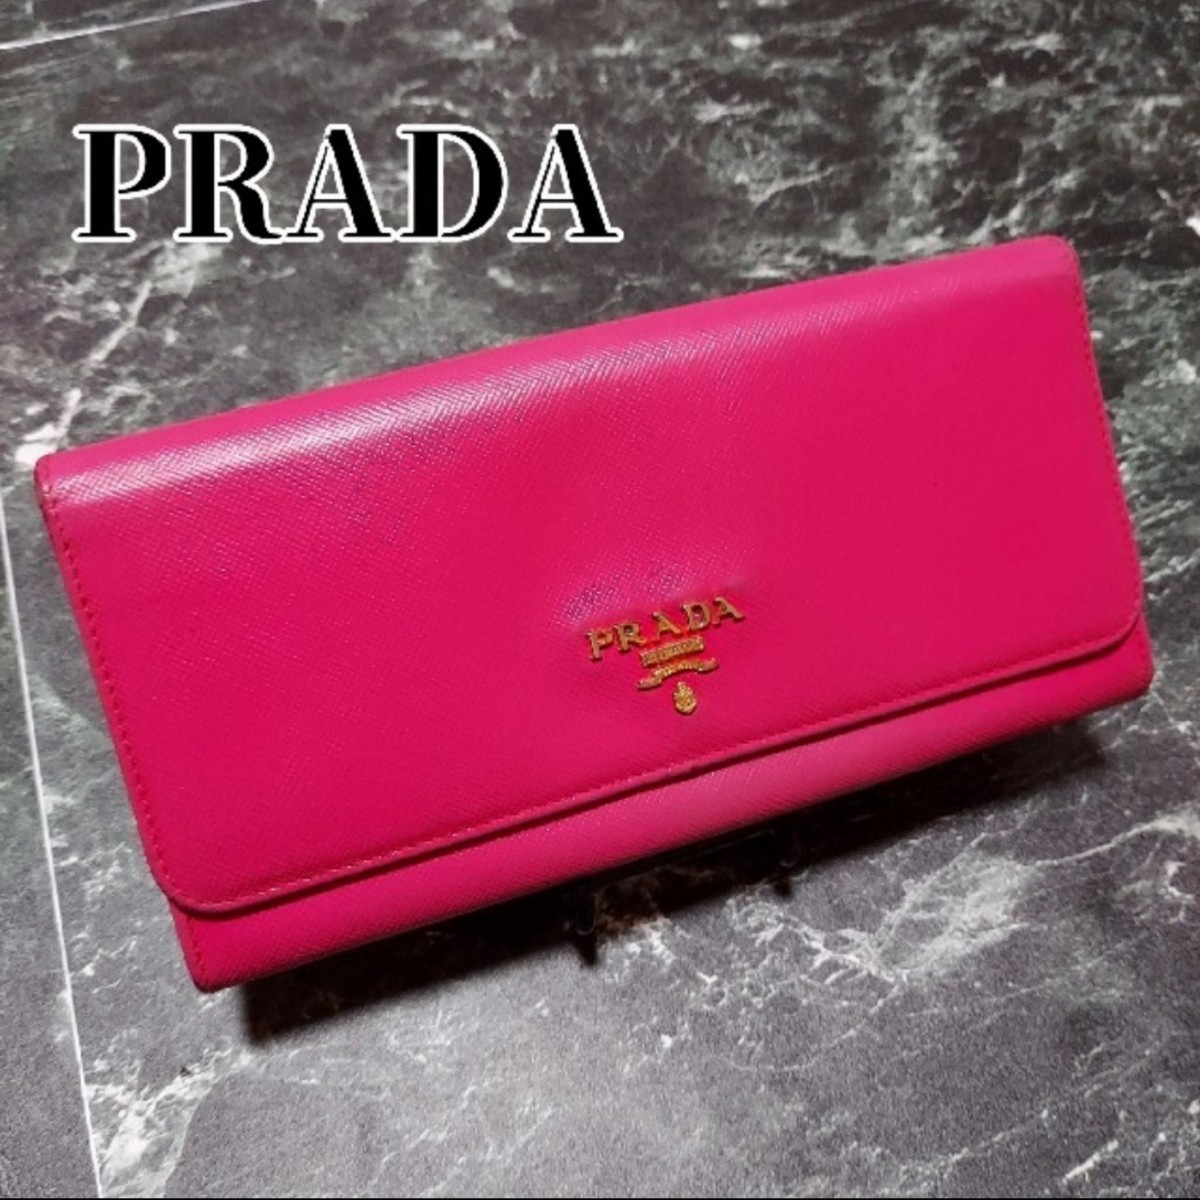 ピンク PRADA - 新品未使用☆超美品プラダ マトラッセ ミニ財布 の通販